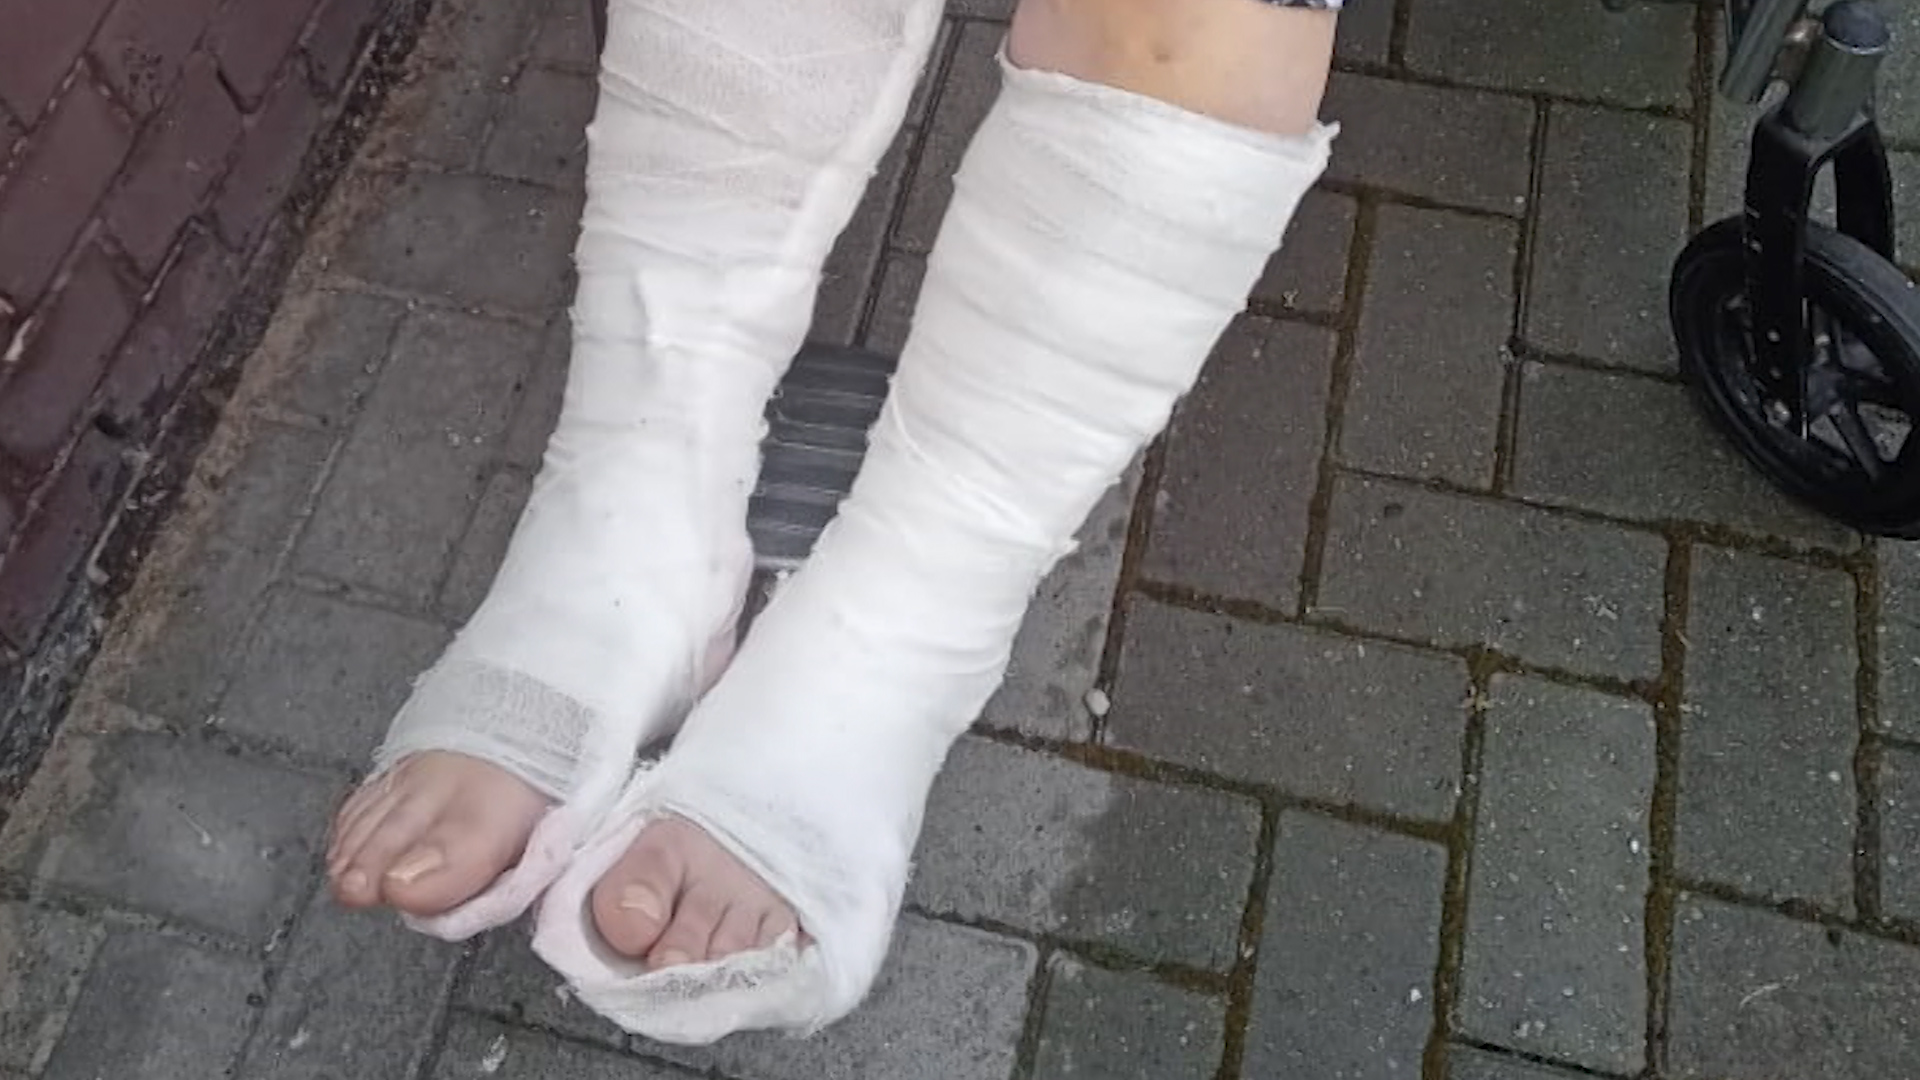 Девушка зажала грабителя между ног и заставила визжать от боли :: Происшествия :: kingplayclub.ru